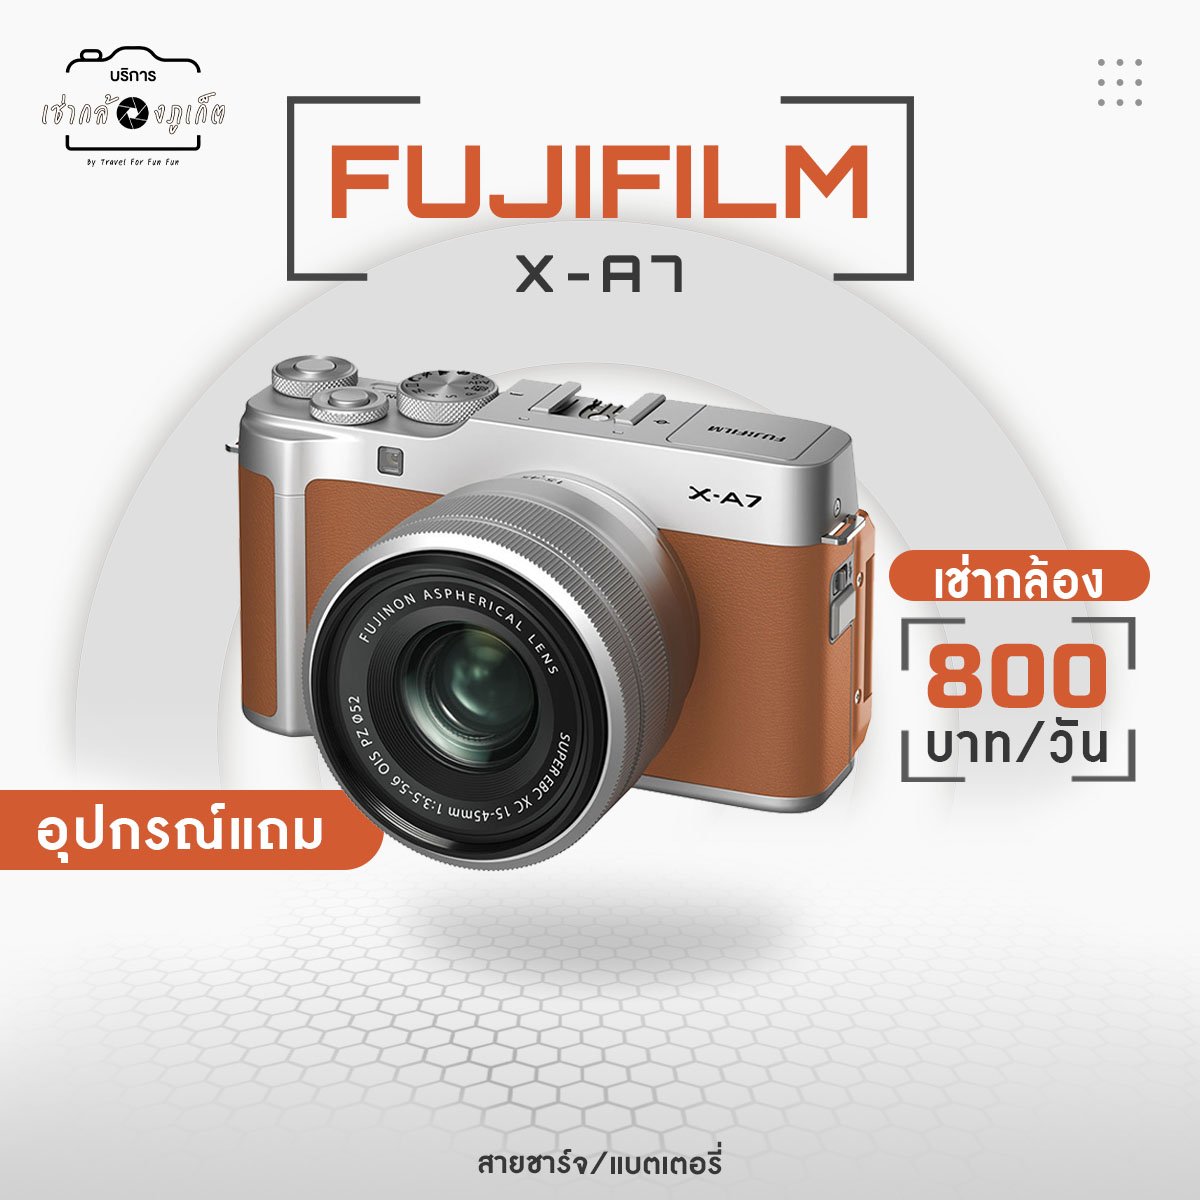 FujiFilm XA7